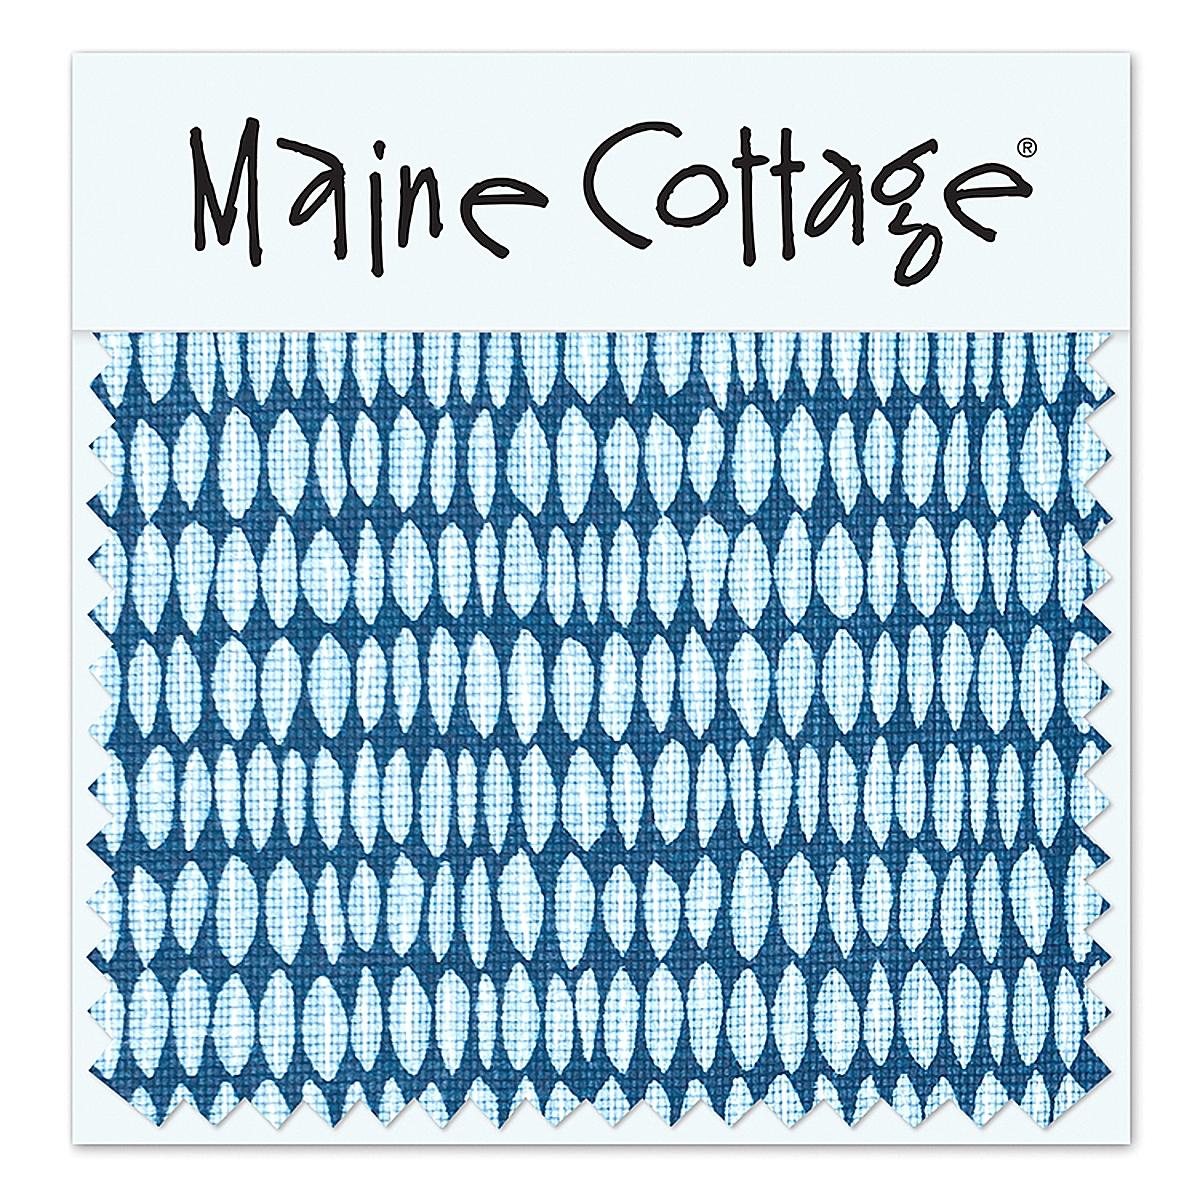 Maine Cottage Leaflette: Marine Fabric Sample | Maine Cottage® 